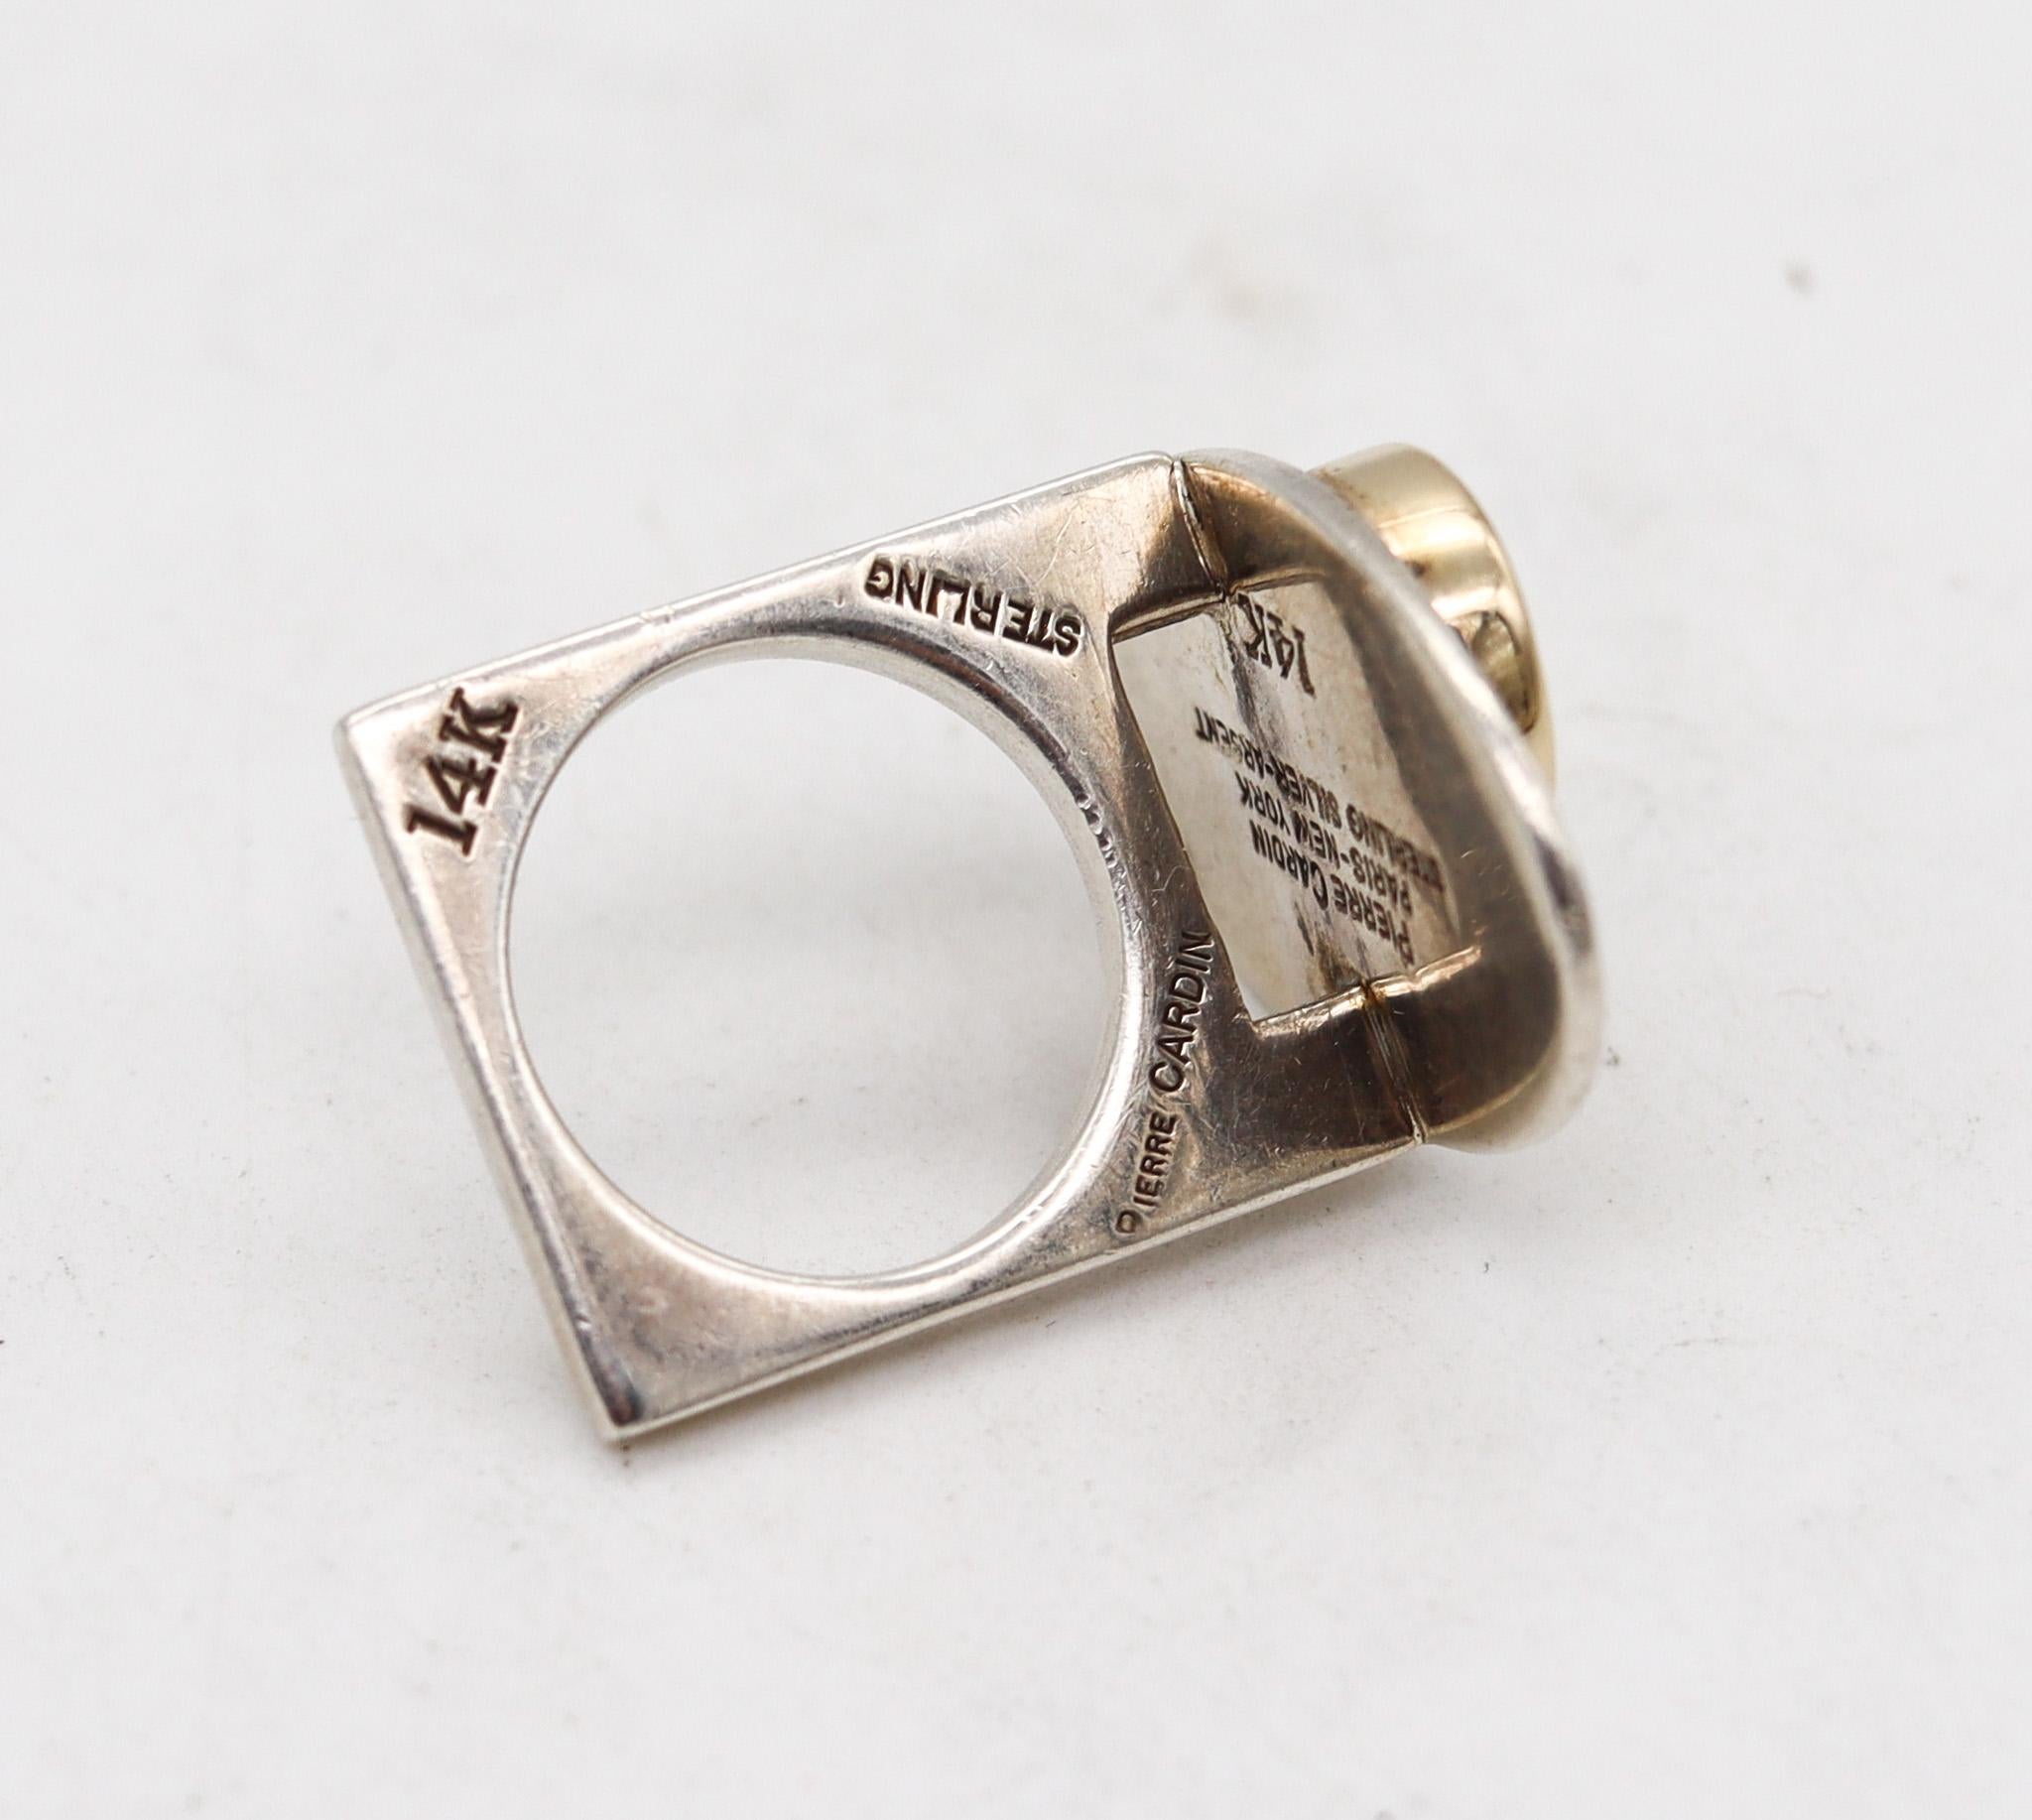 Geometrischer Ring, entworfen von Dinh Van für Pierre Cardin.

Ein skulpturales, modernistisches Stück, das der Pariser Modedesigner Pierre Cardin in den 1970er Jahren in Frankreich schuf. Dieser geometrische, skulpturale Ring wurde mit